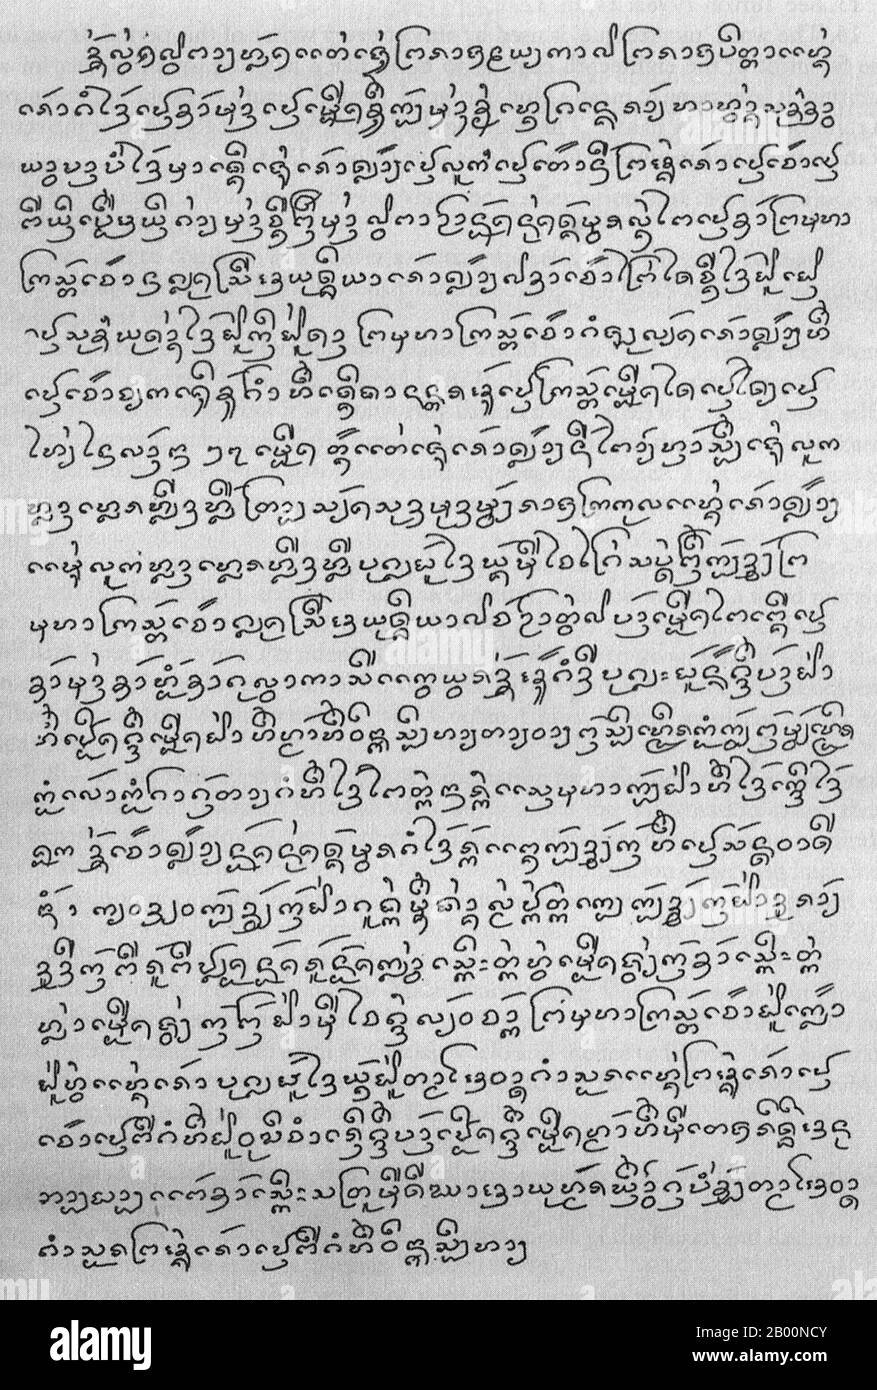 Tailandia/LAN Na: Escritura de Tai del Norte (LAN Na). Crónica de Chiang Mai. El norte de Tailandia o Kham Mueang es el idioma del pueblo Khon Mueang de Lanna, Tailandia. Es un idioma Tai, estrechamente relacionado con el tailandés y lao. El norte de Tailandia tiene aproximadamente seis millones de hablantes, la mayoría de los cuales viven en Tailandia, con unos pocos miles en el noroeste de Laos. En la actualidad, se utilizan diferentes guiones para escribir el norte de Tailandia. El norte de Tailandia se escribe tradicionalmente con el guión Tai Tham, que en el norte de Tailandia se llama tua mueang o tua Tham. Foto de stock